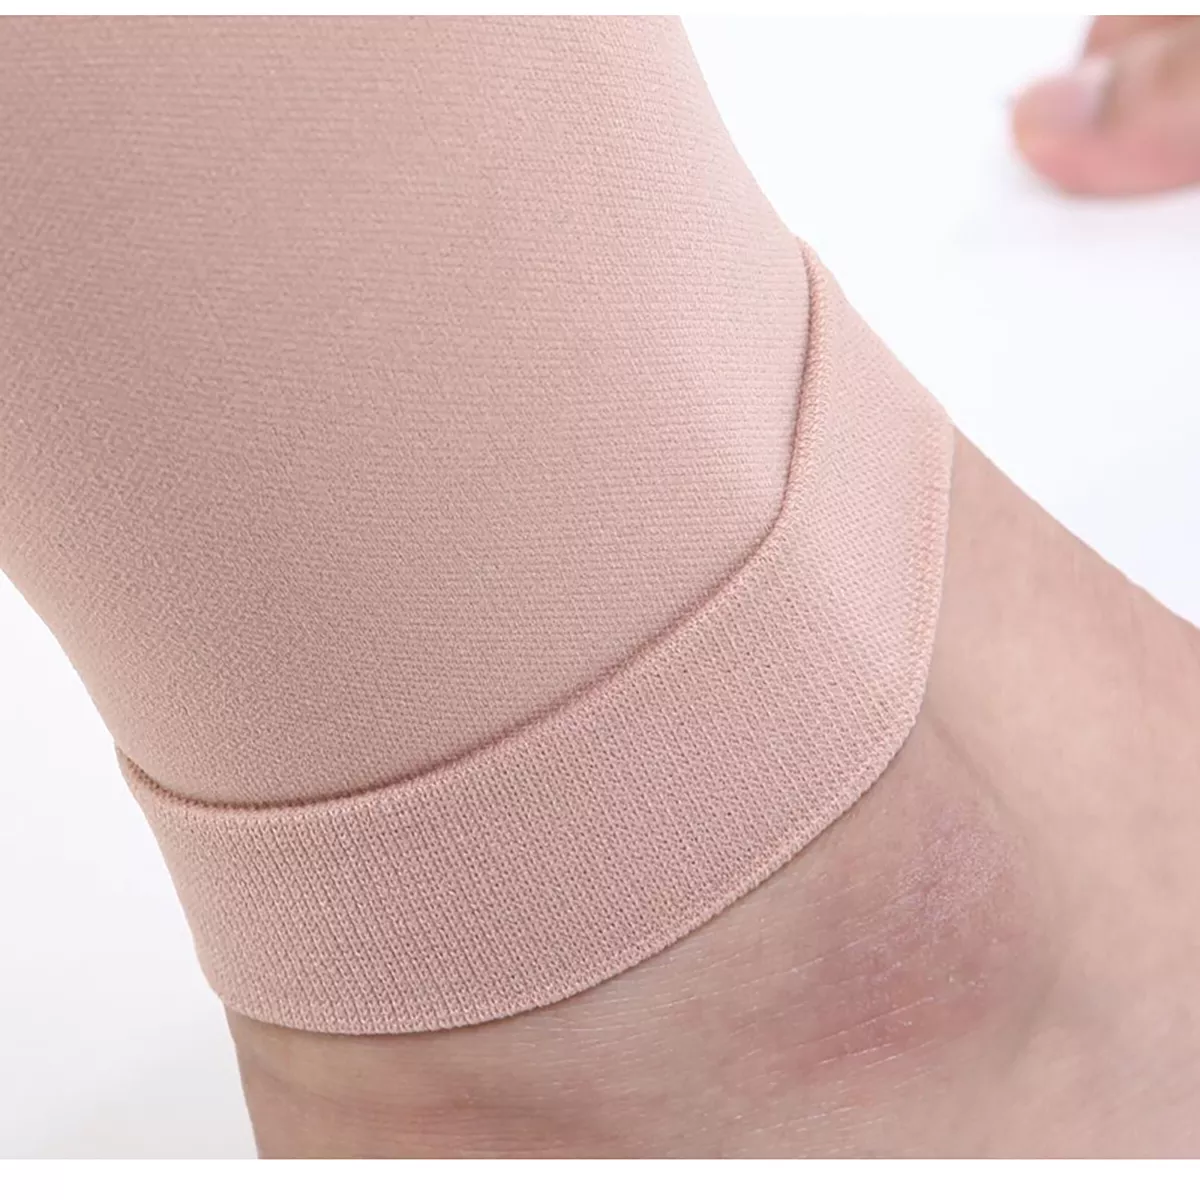 Varcoh ® 8-15 mmHg Men Calf Sleeve Compression Socks Beige